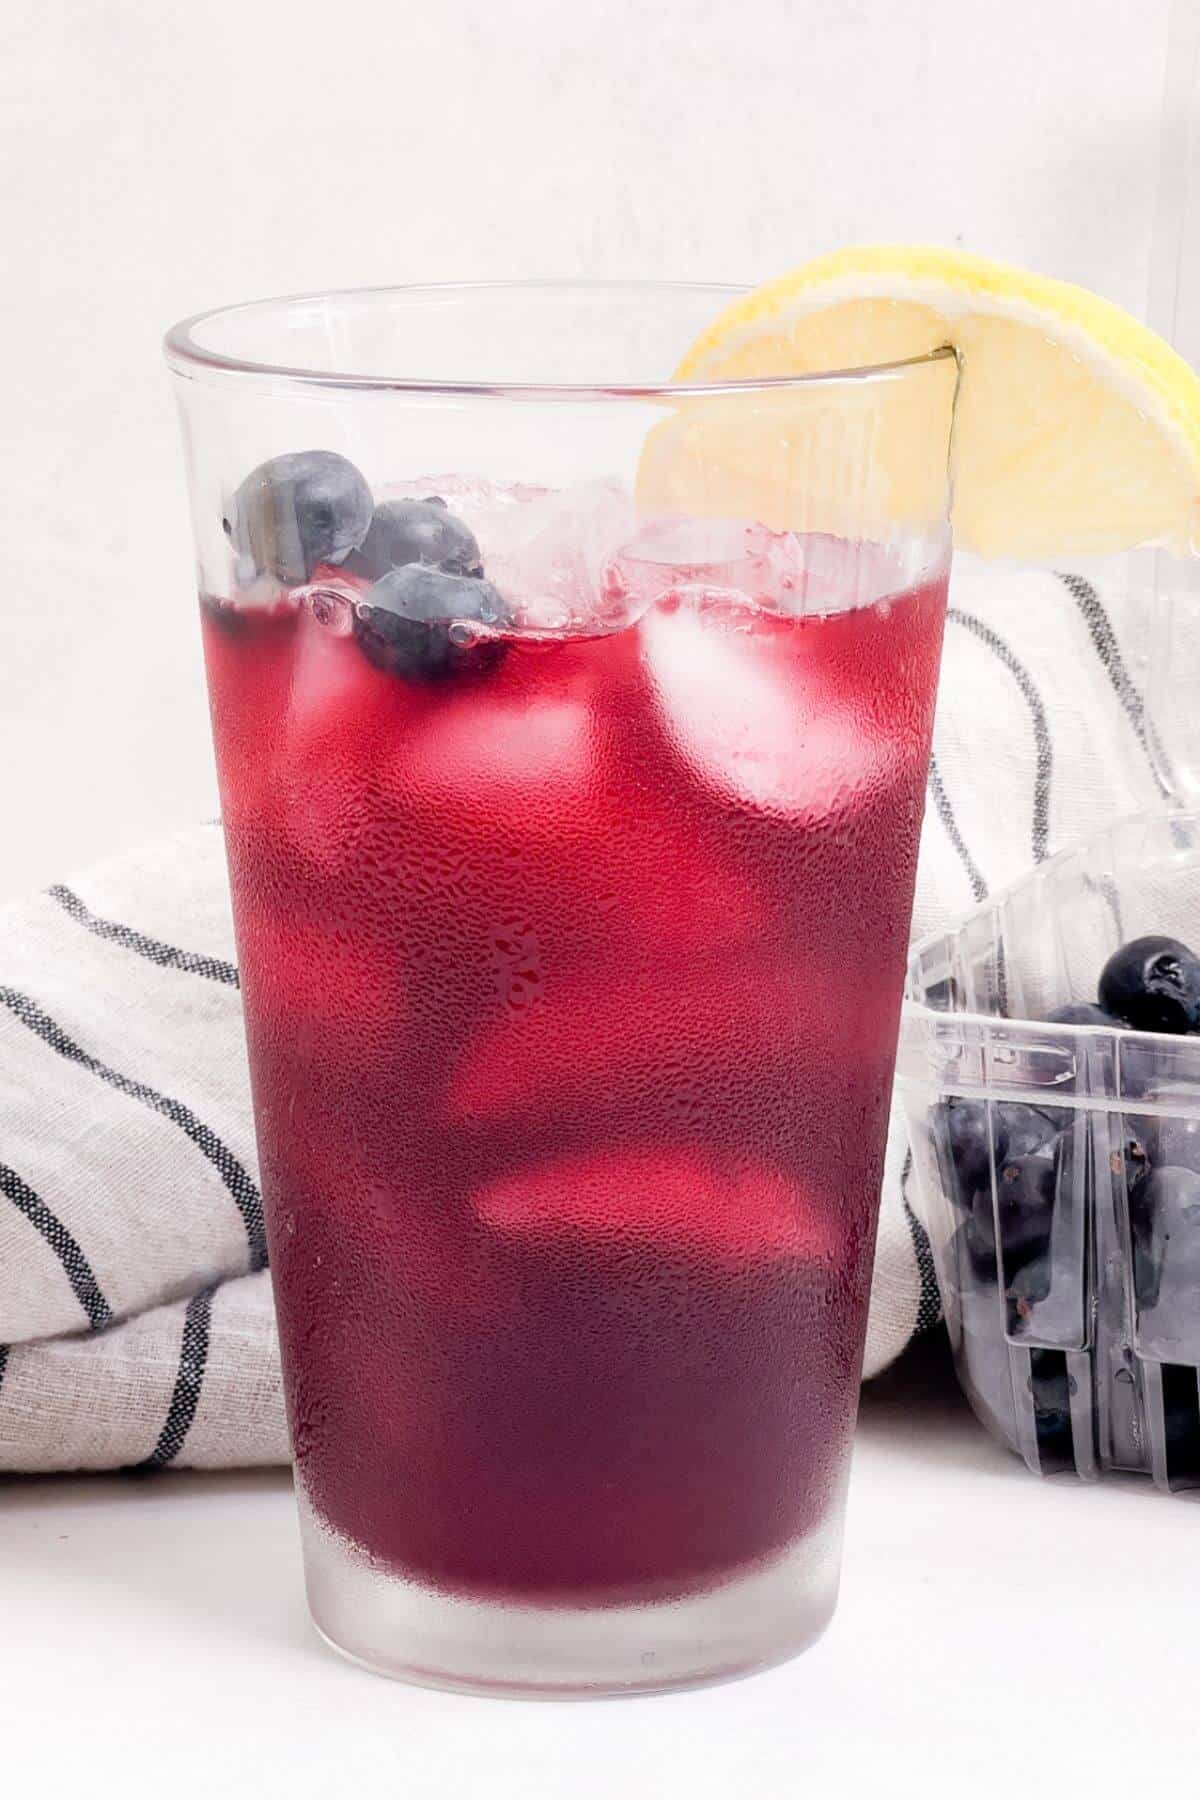 Garnishing blueberry lemonade cocktail with fresh lemon slice.